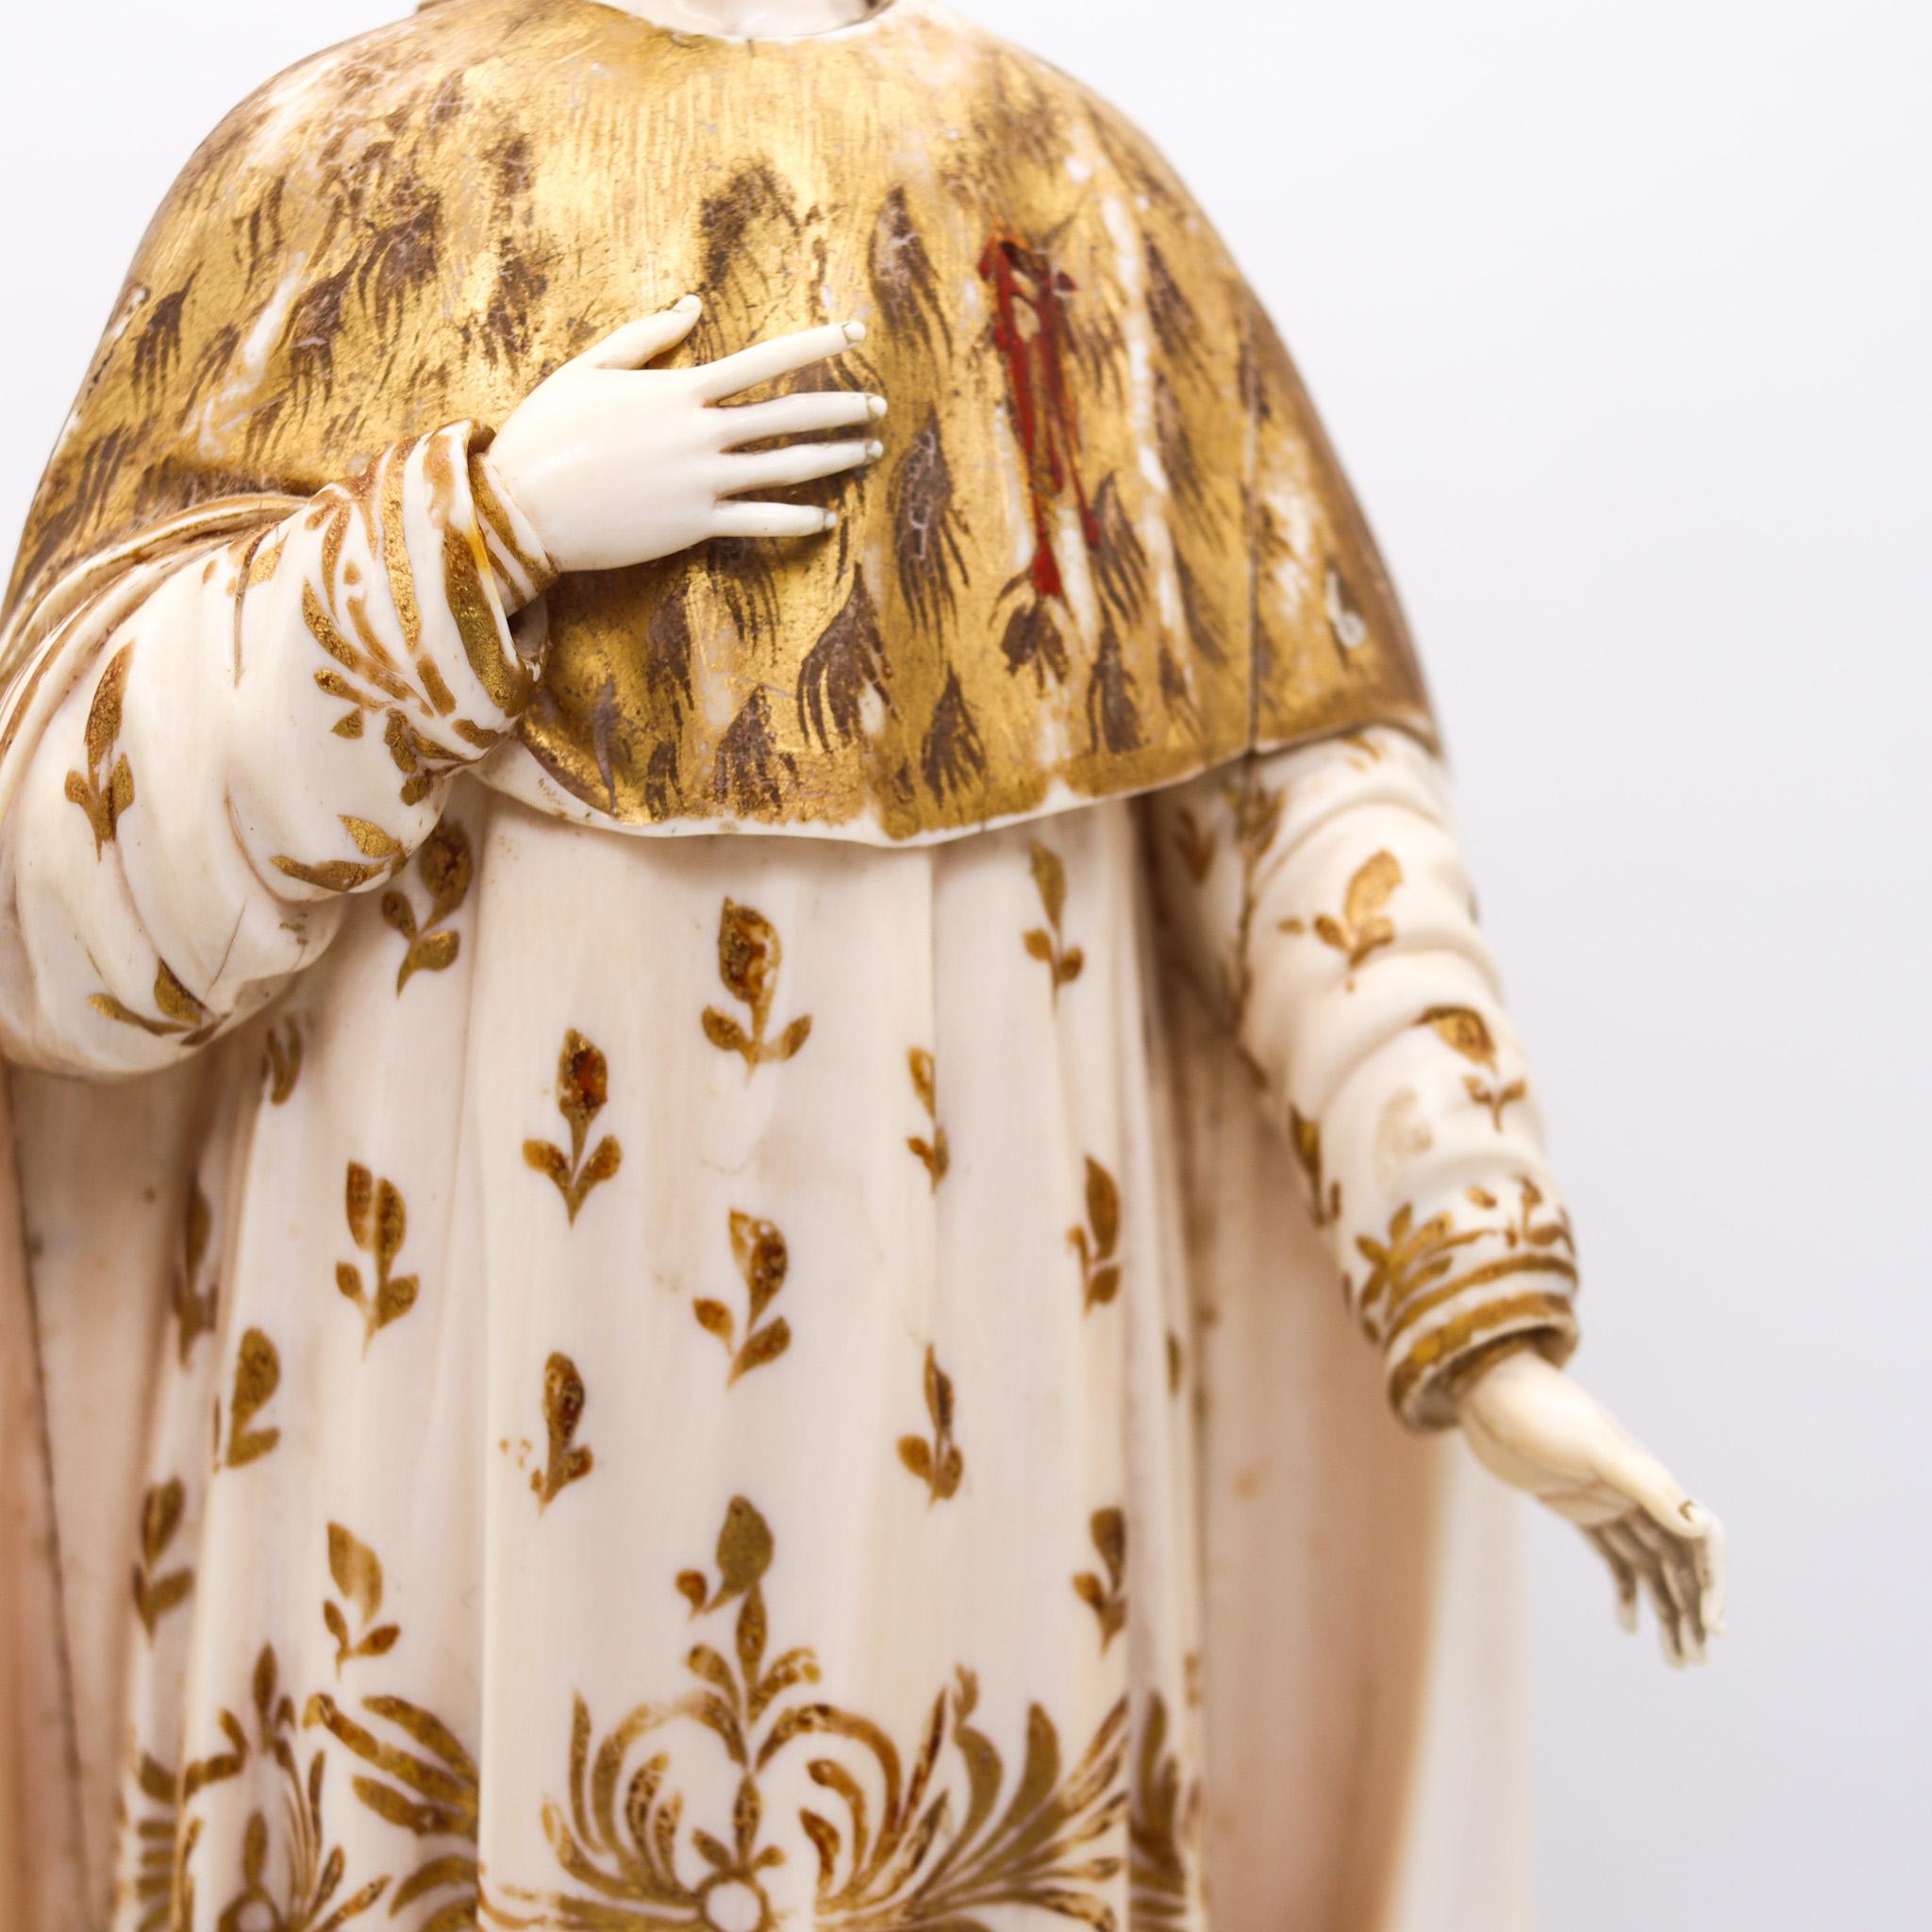 Eine italienische Skulptur des Heiligen Peters von Verona aus dem 18. Jahrhundert.

Eine herrliche Skulptur des heiligen Peters, Märtyrer von Verona, geschaffen von einem Mitglied der lombardischen Kunstschule in Verona, Italien, im frühen 18. Die